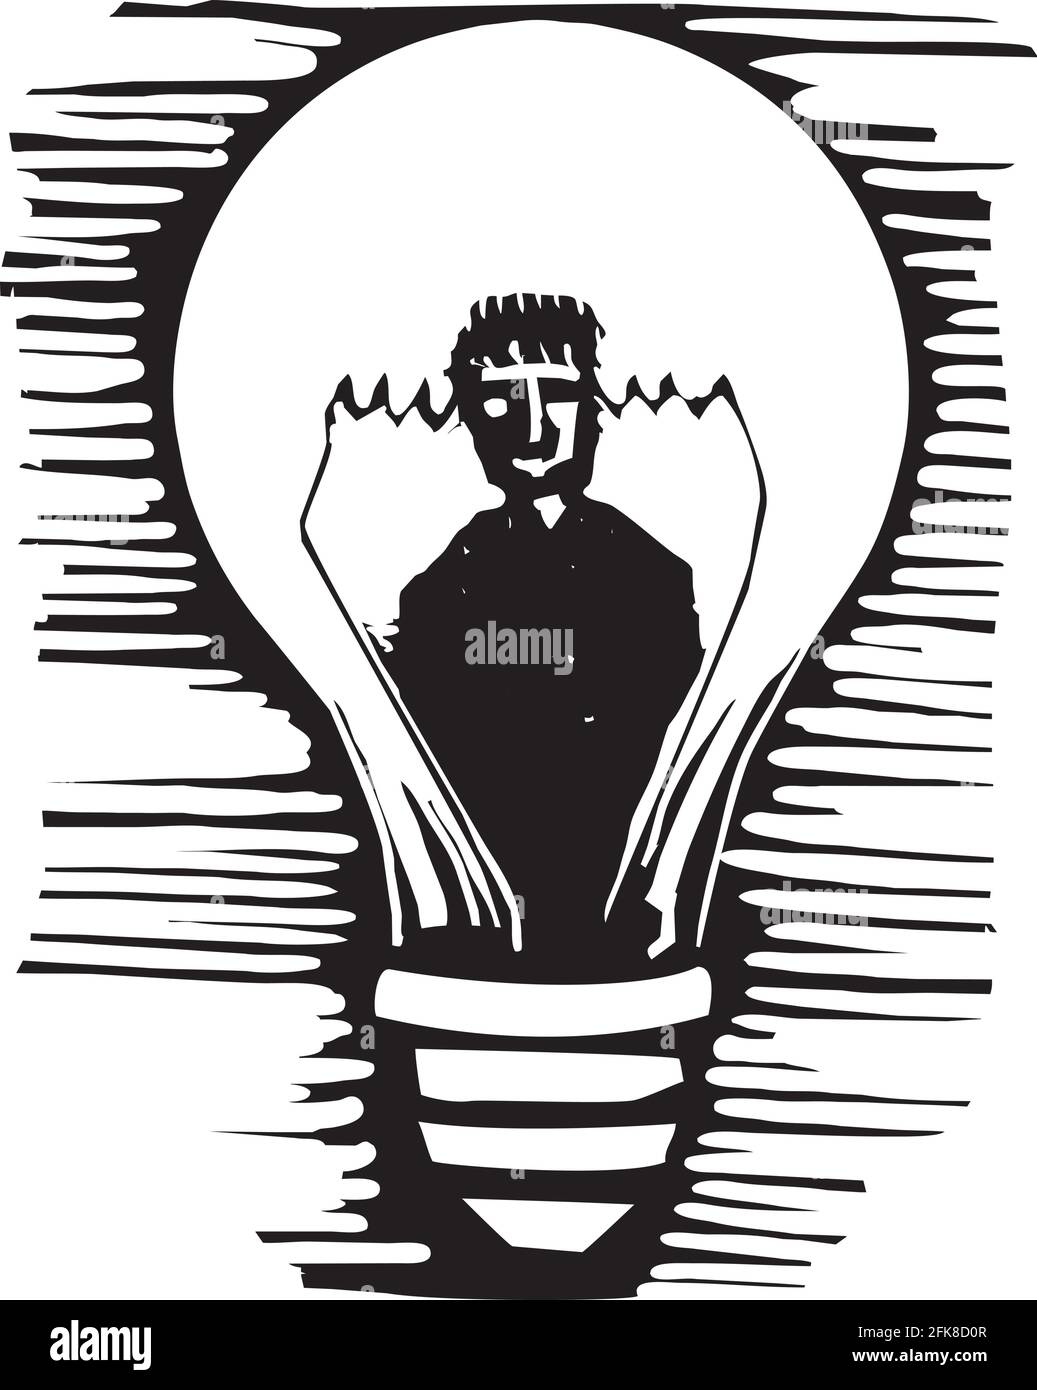 Bild im expressionistischen Stil eines Mannes in einer Glühbirne Stock Vektor